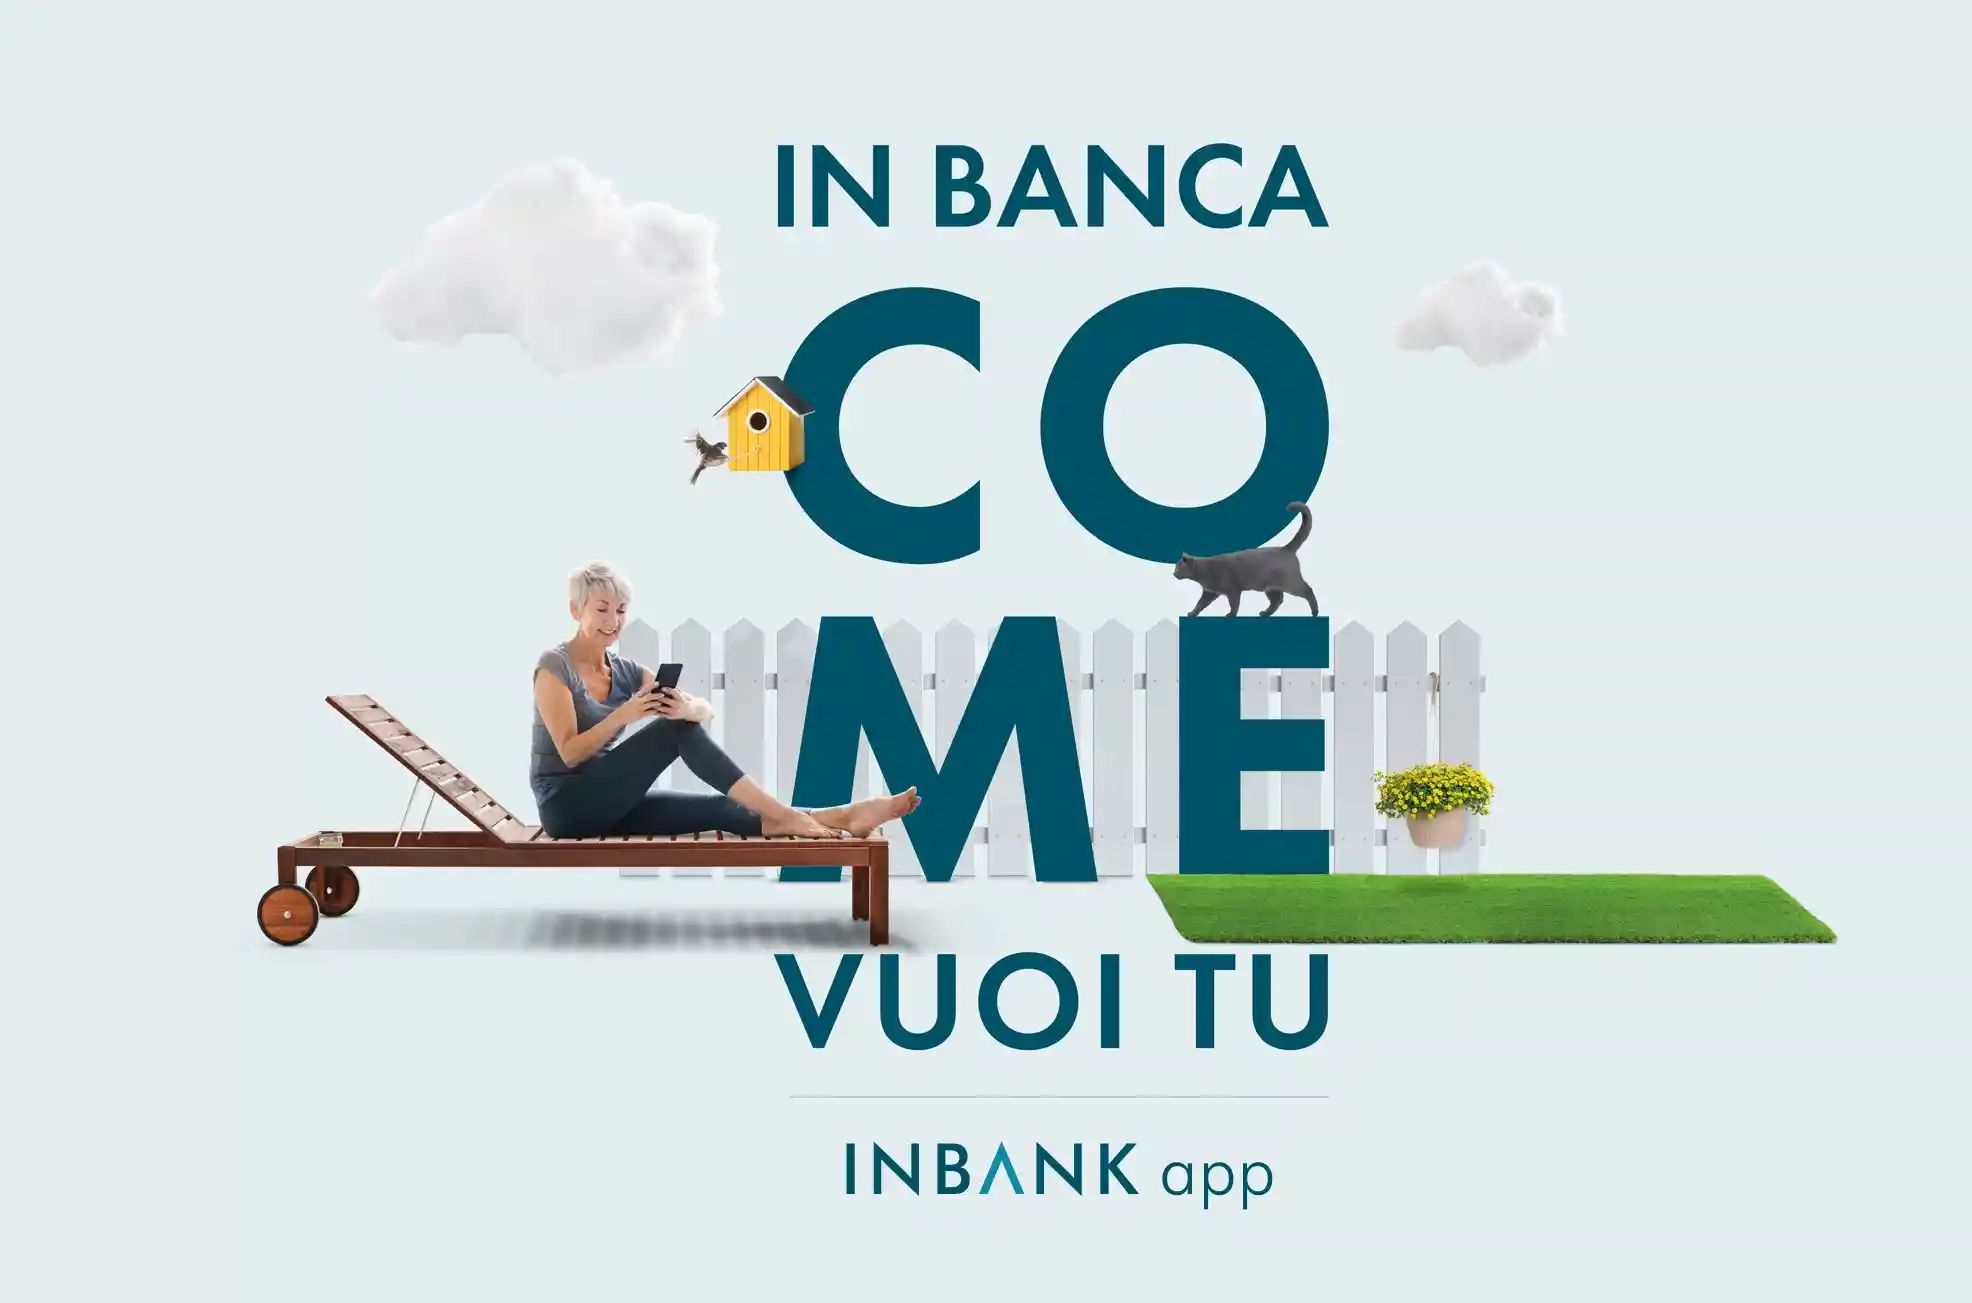 inbank app